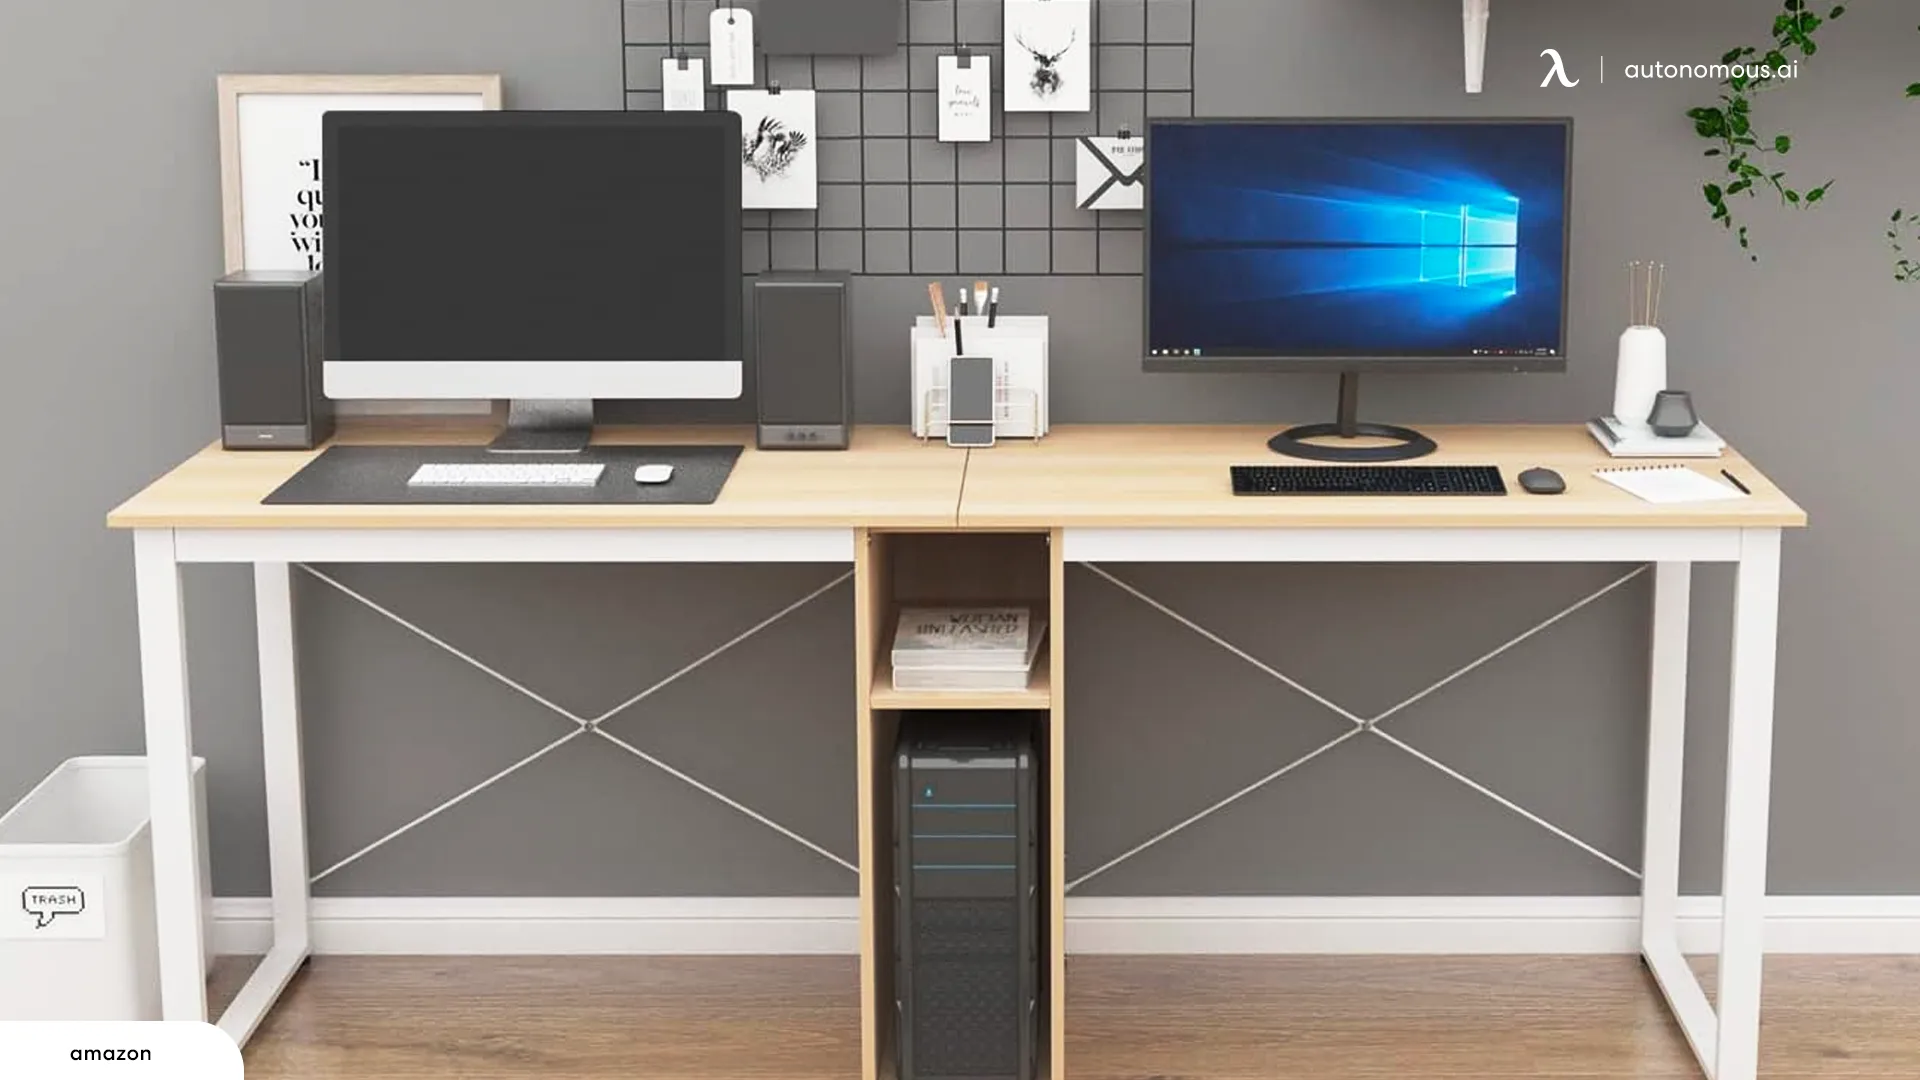 A Double Desk